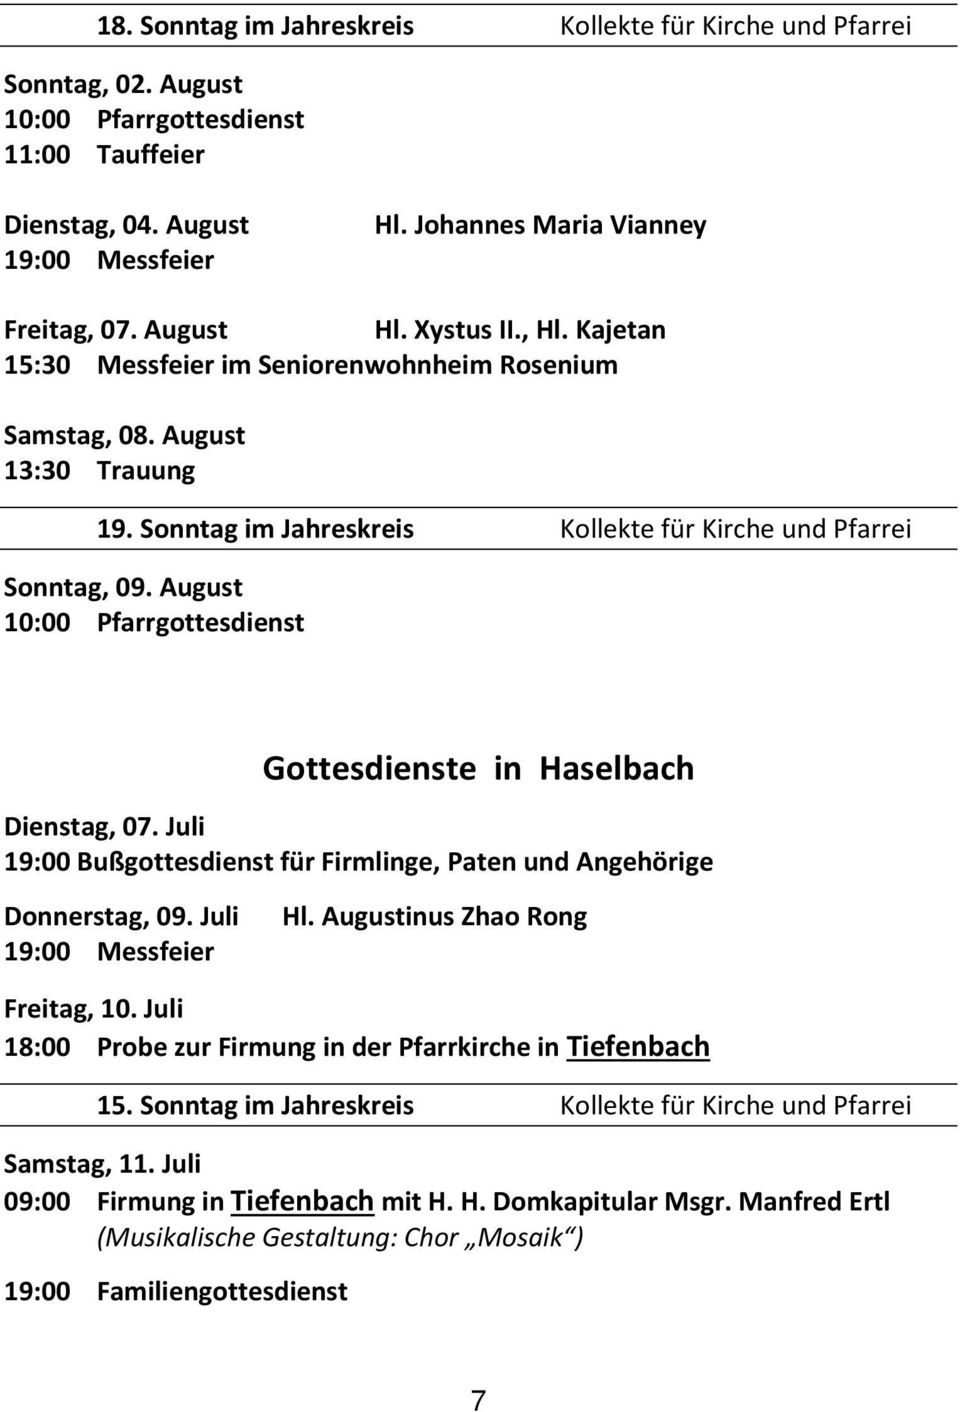 August 10:00 Pfarrgottesdienst Gottesdienste in Haselbach Dienstag, 07. Juli 19:00 Bußgottesdienst für Firmlinge, Paten und Angehörige Donnerstag, 09. Juli Hl. Augustinus Zhao Rong Freitag, 10.